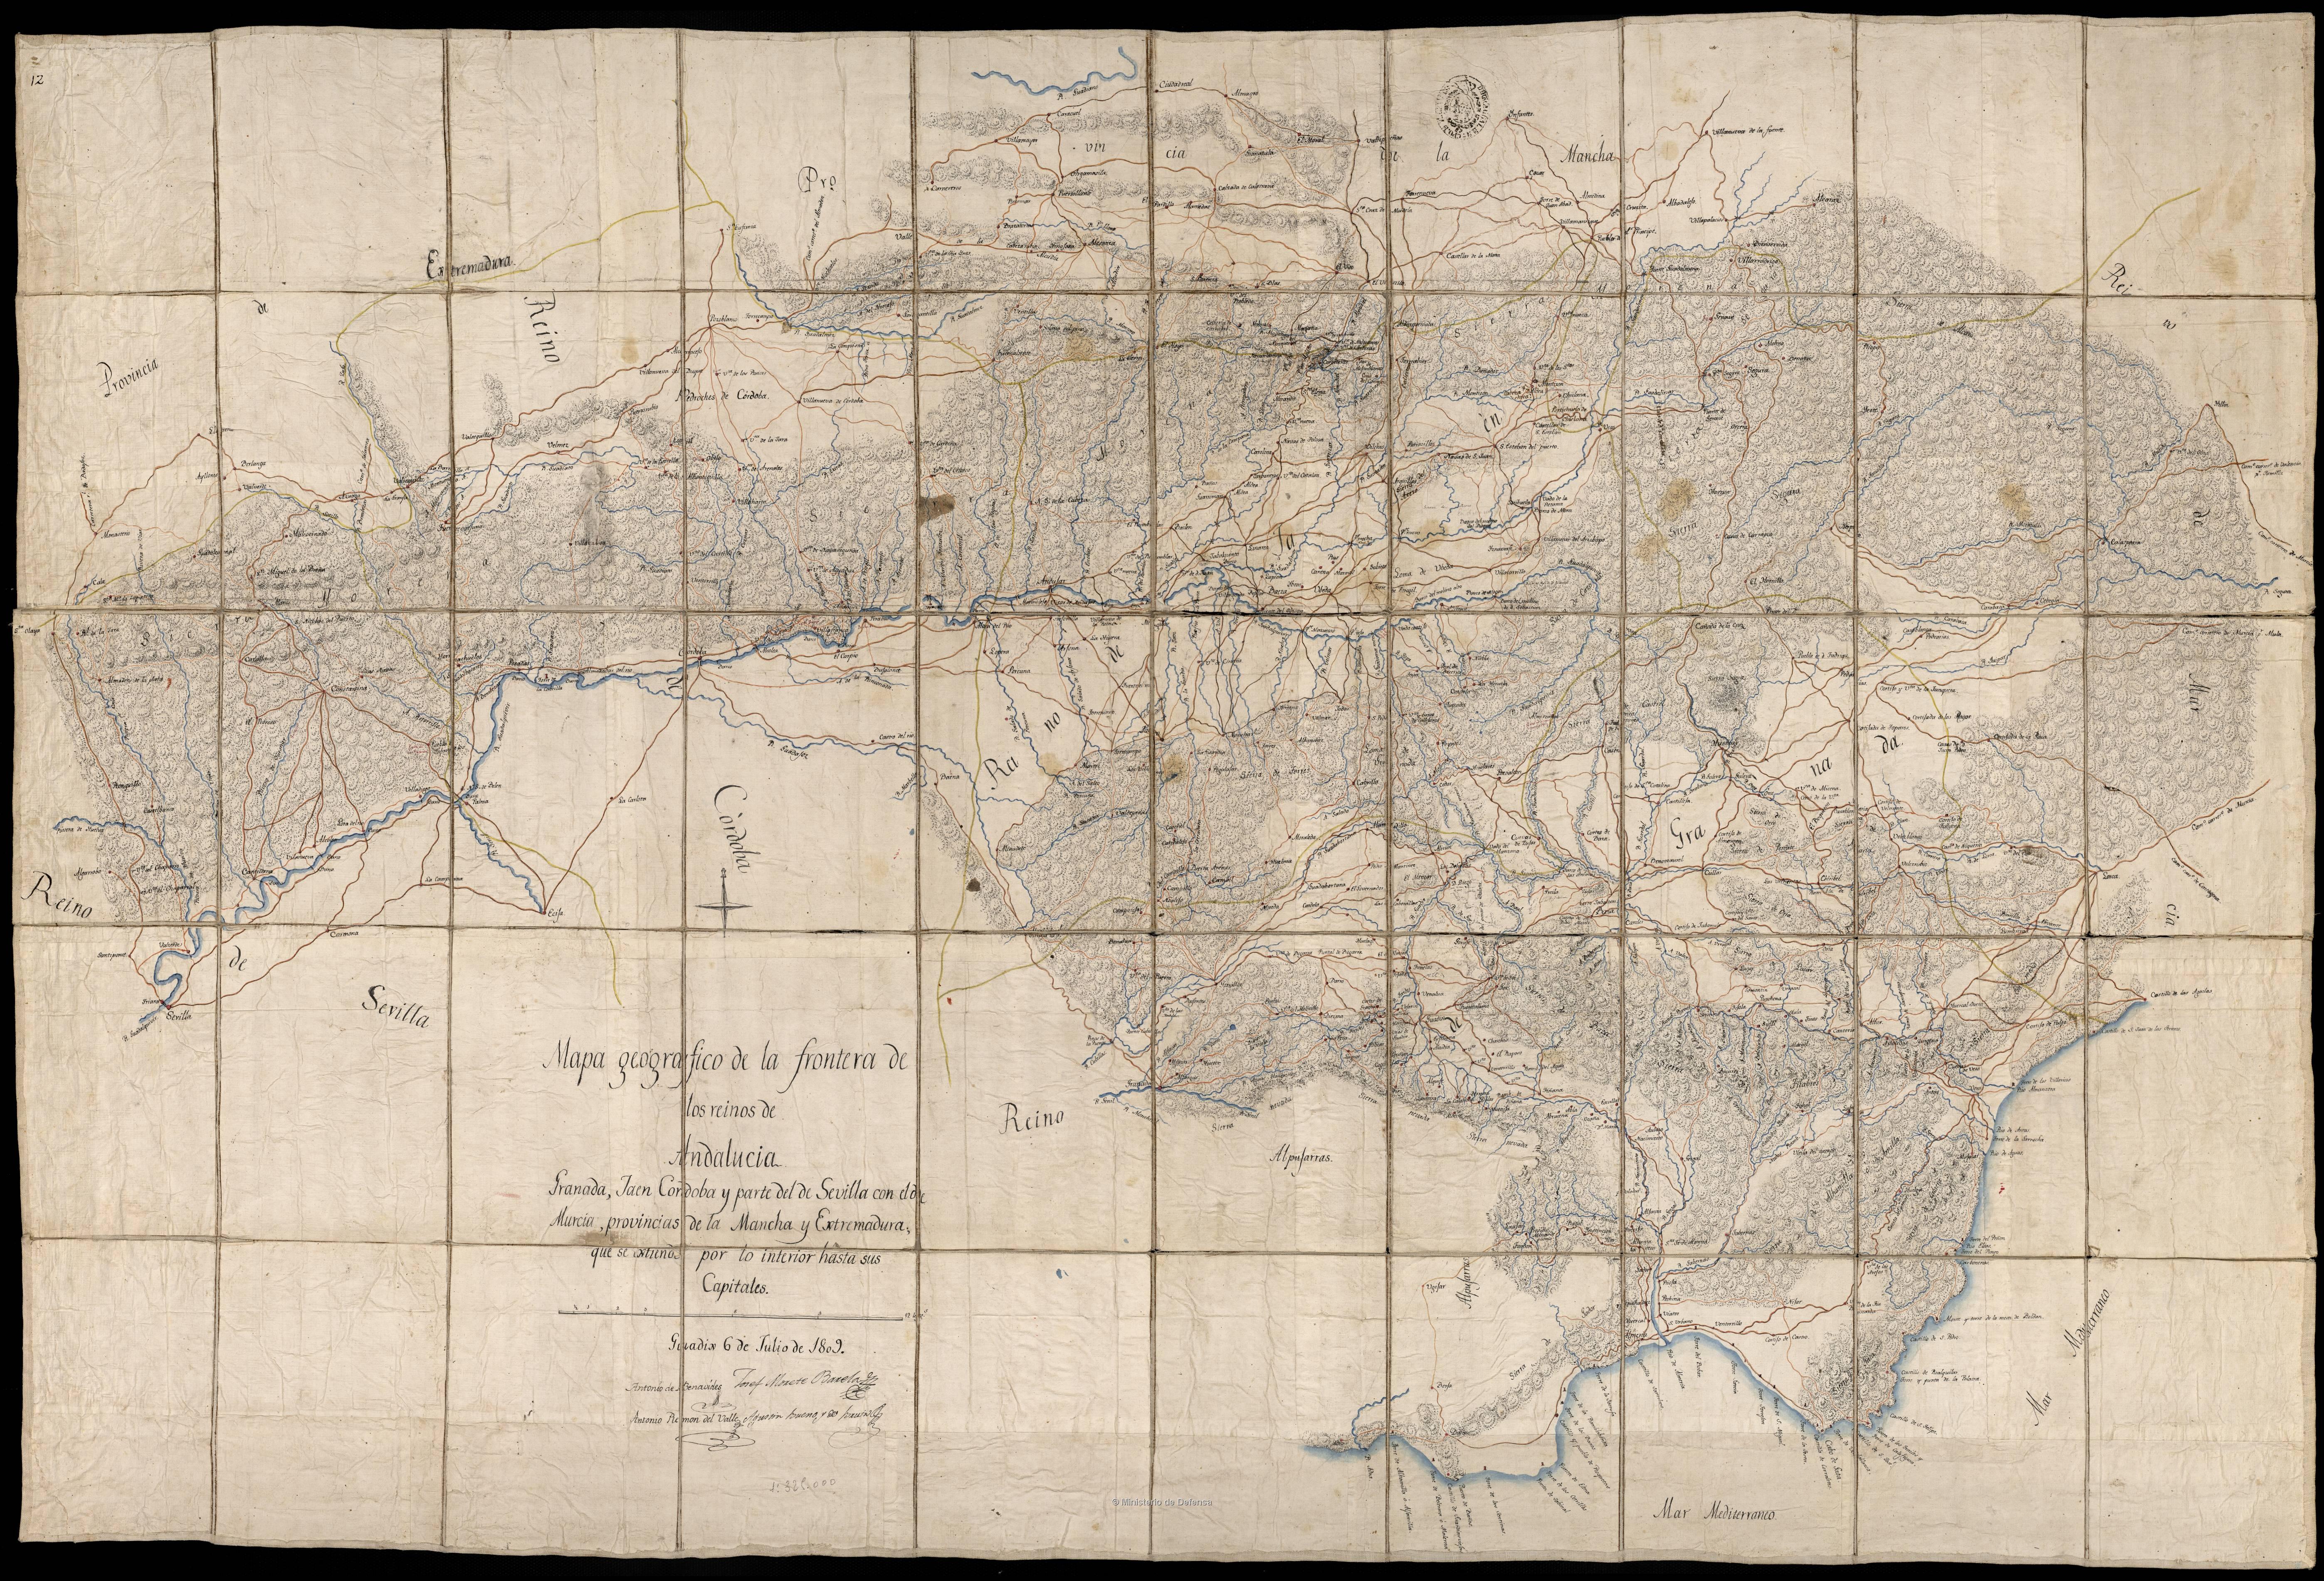 Mapa geográfico de la frontera de los reinos de Andalucía, Granada, Jaén, Córdoba y parte del de Sevilla con el de... (6 de Julio de 1809)